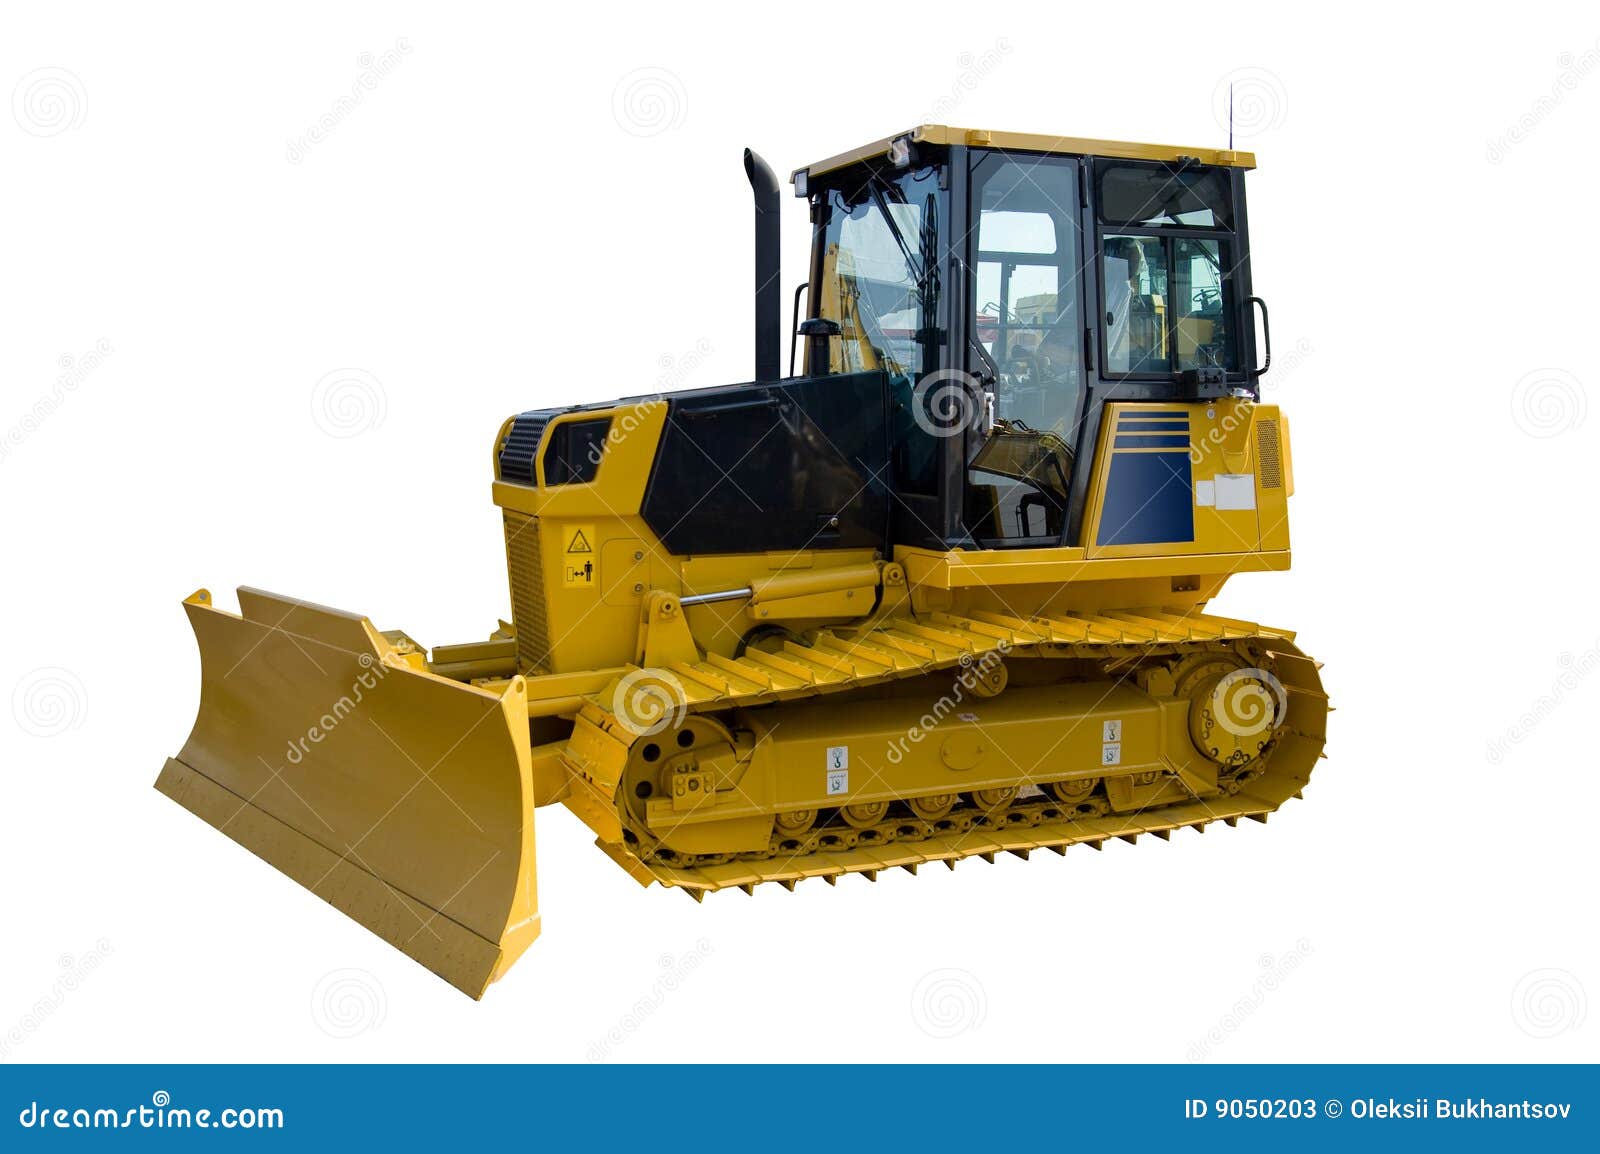 new yellow bulldozer